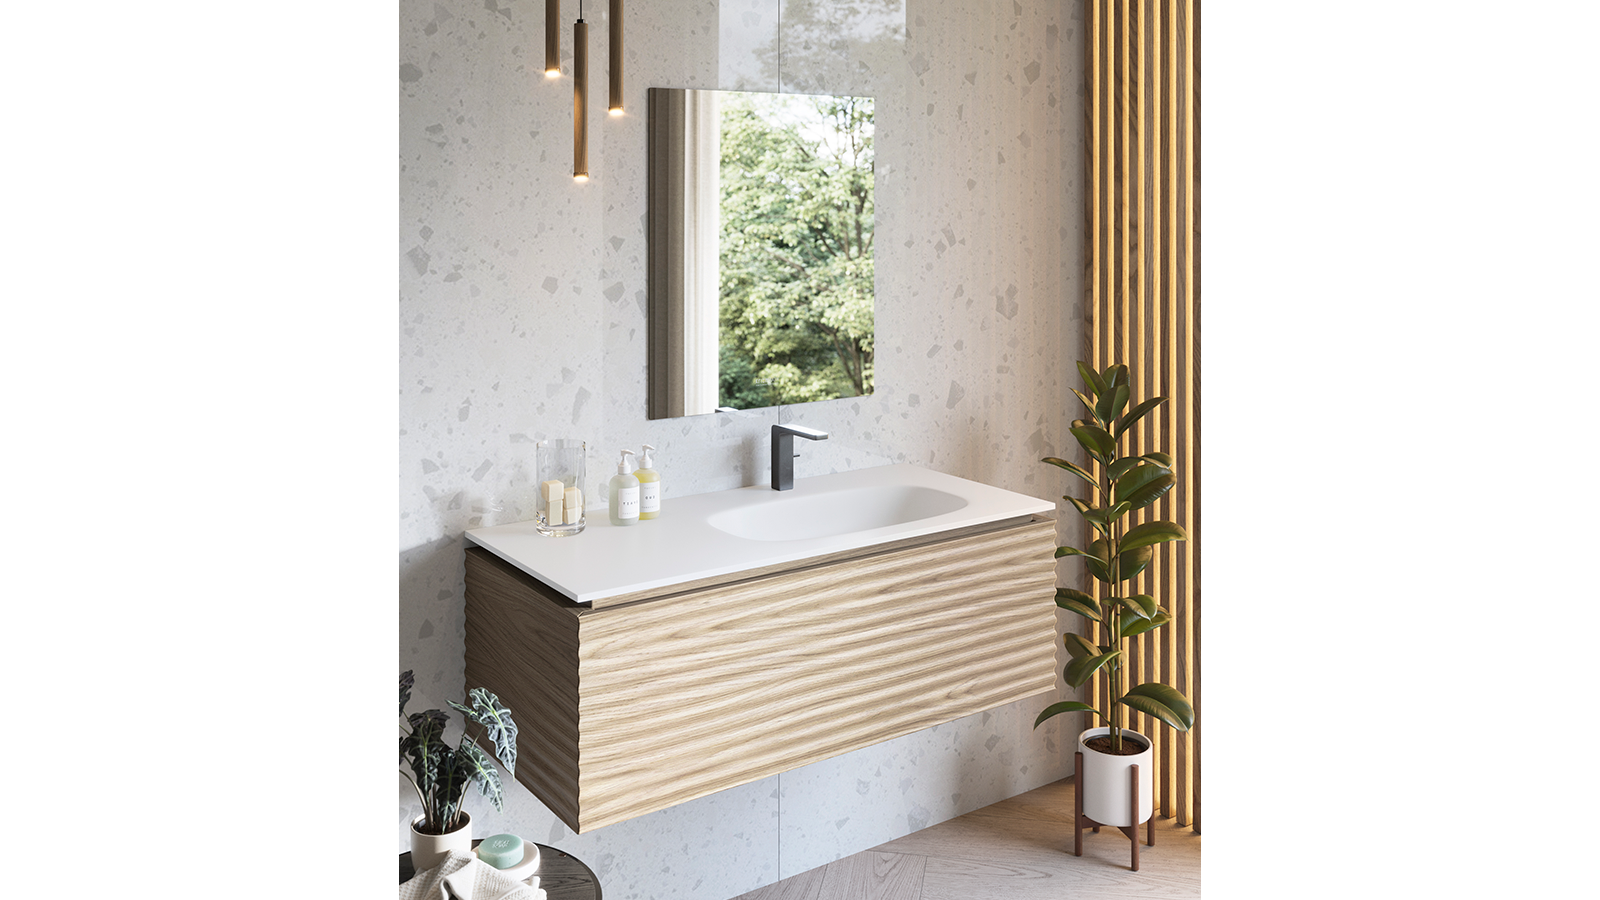 Muebles de baño: funcionalidad y diseño en perfecta armonía